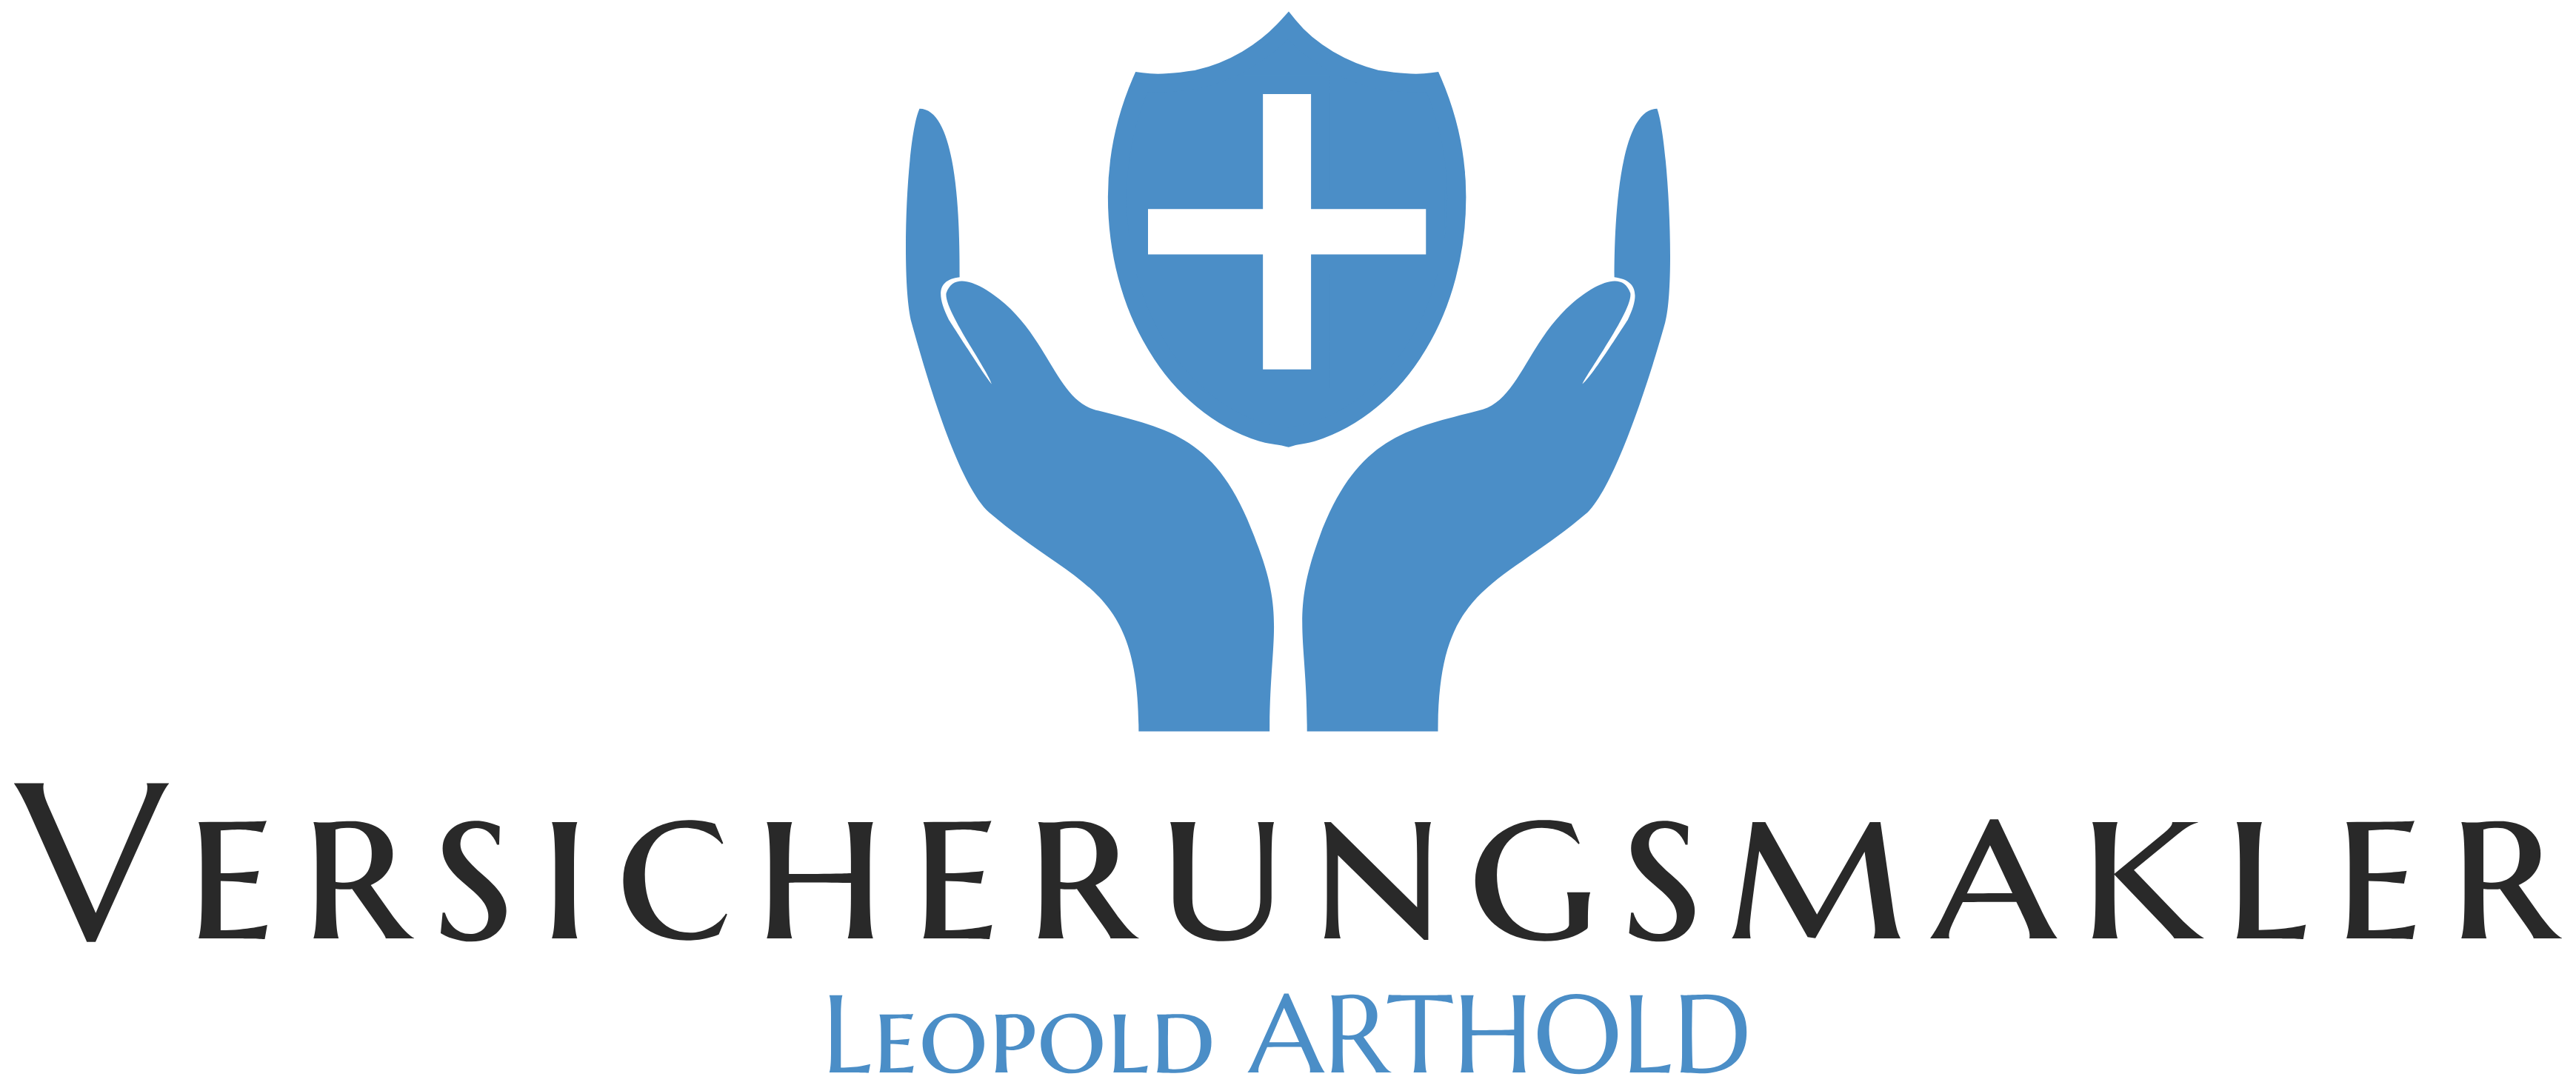 Versicherungsmakler Leopold ARTHOLD